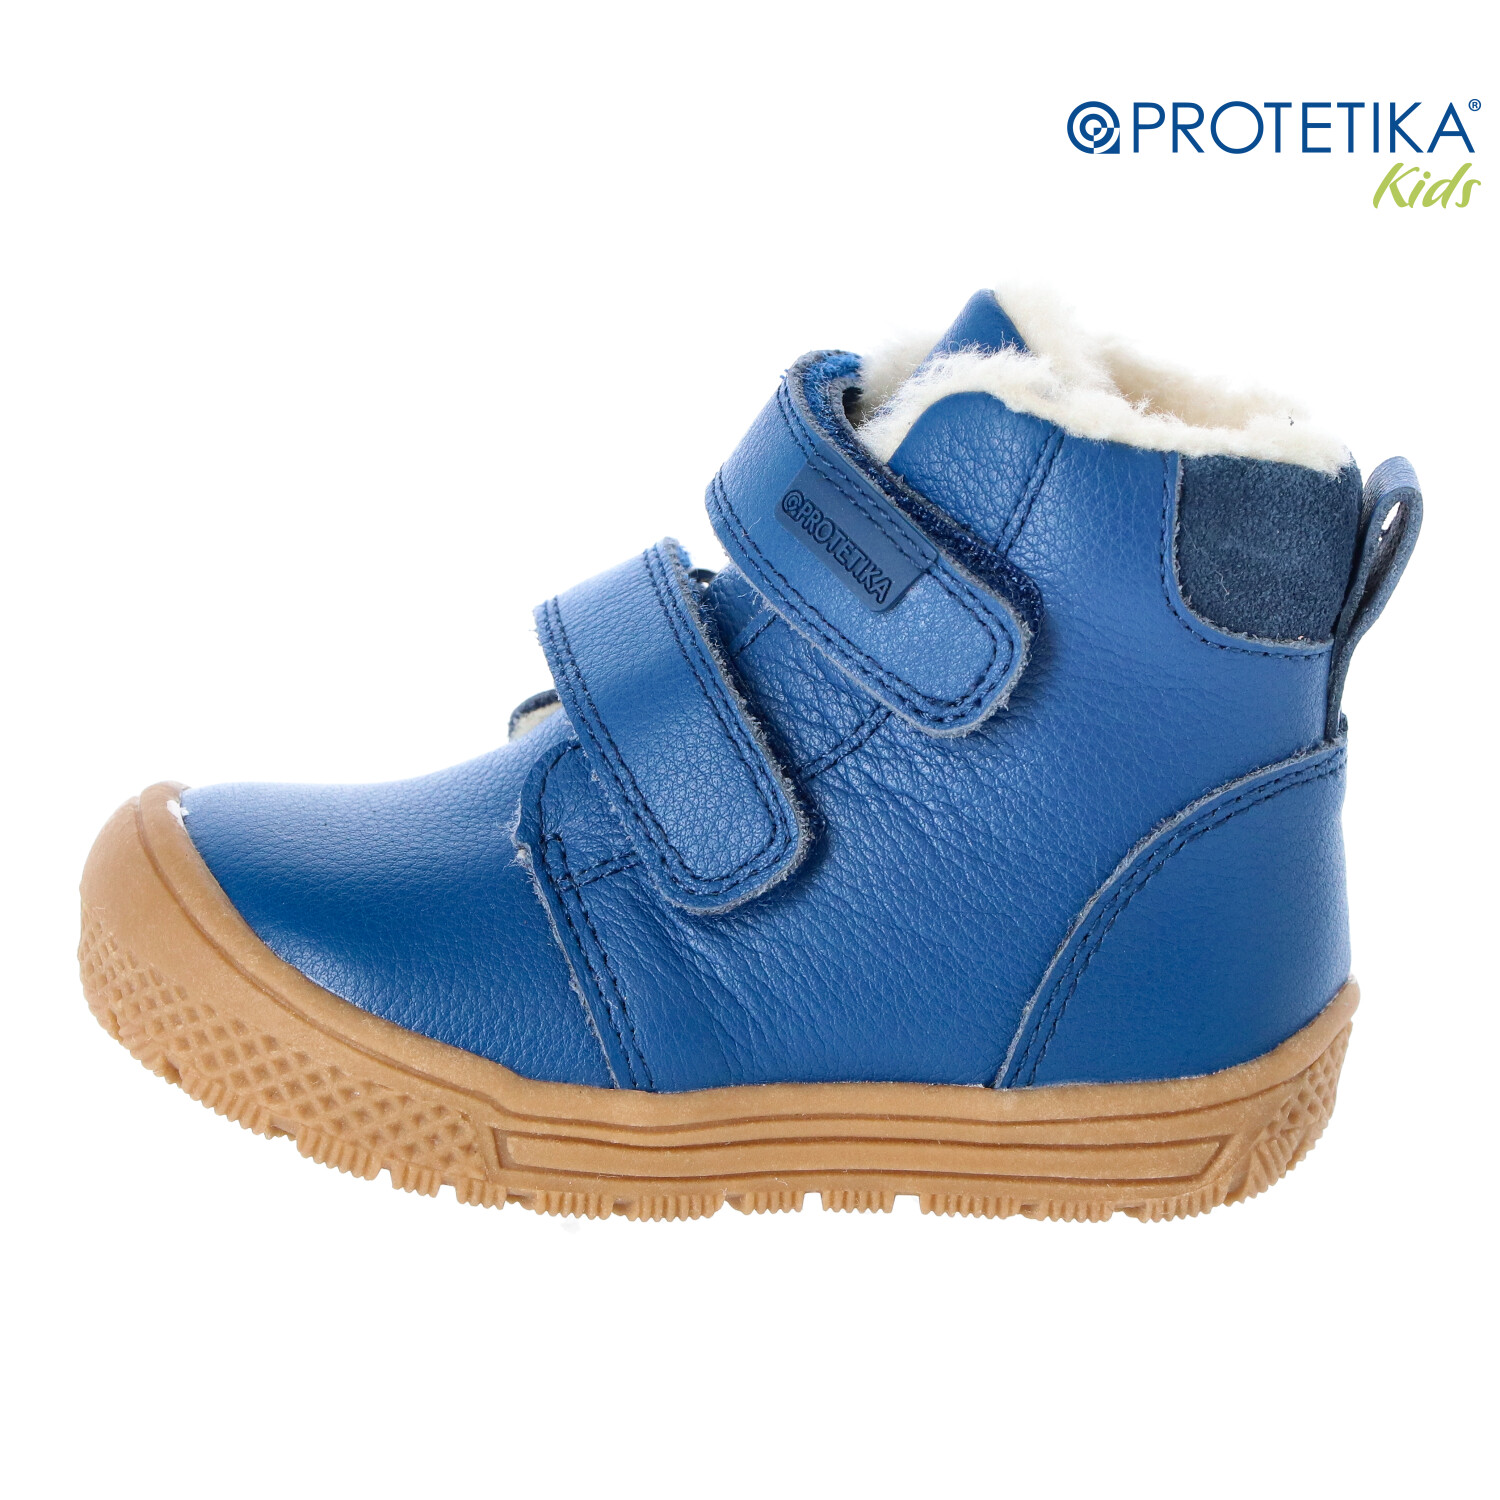 Protetika - zimné topánky TEDY blue